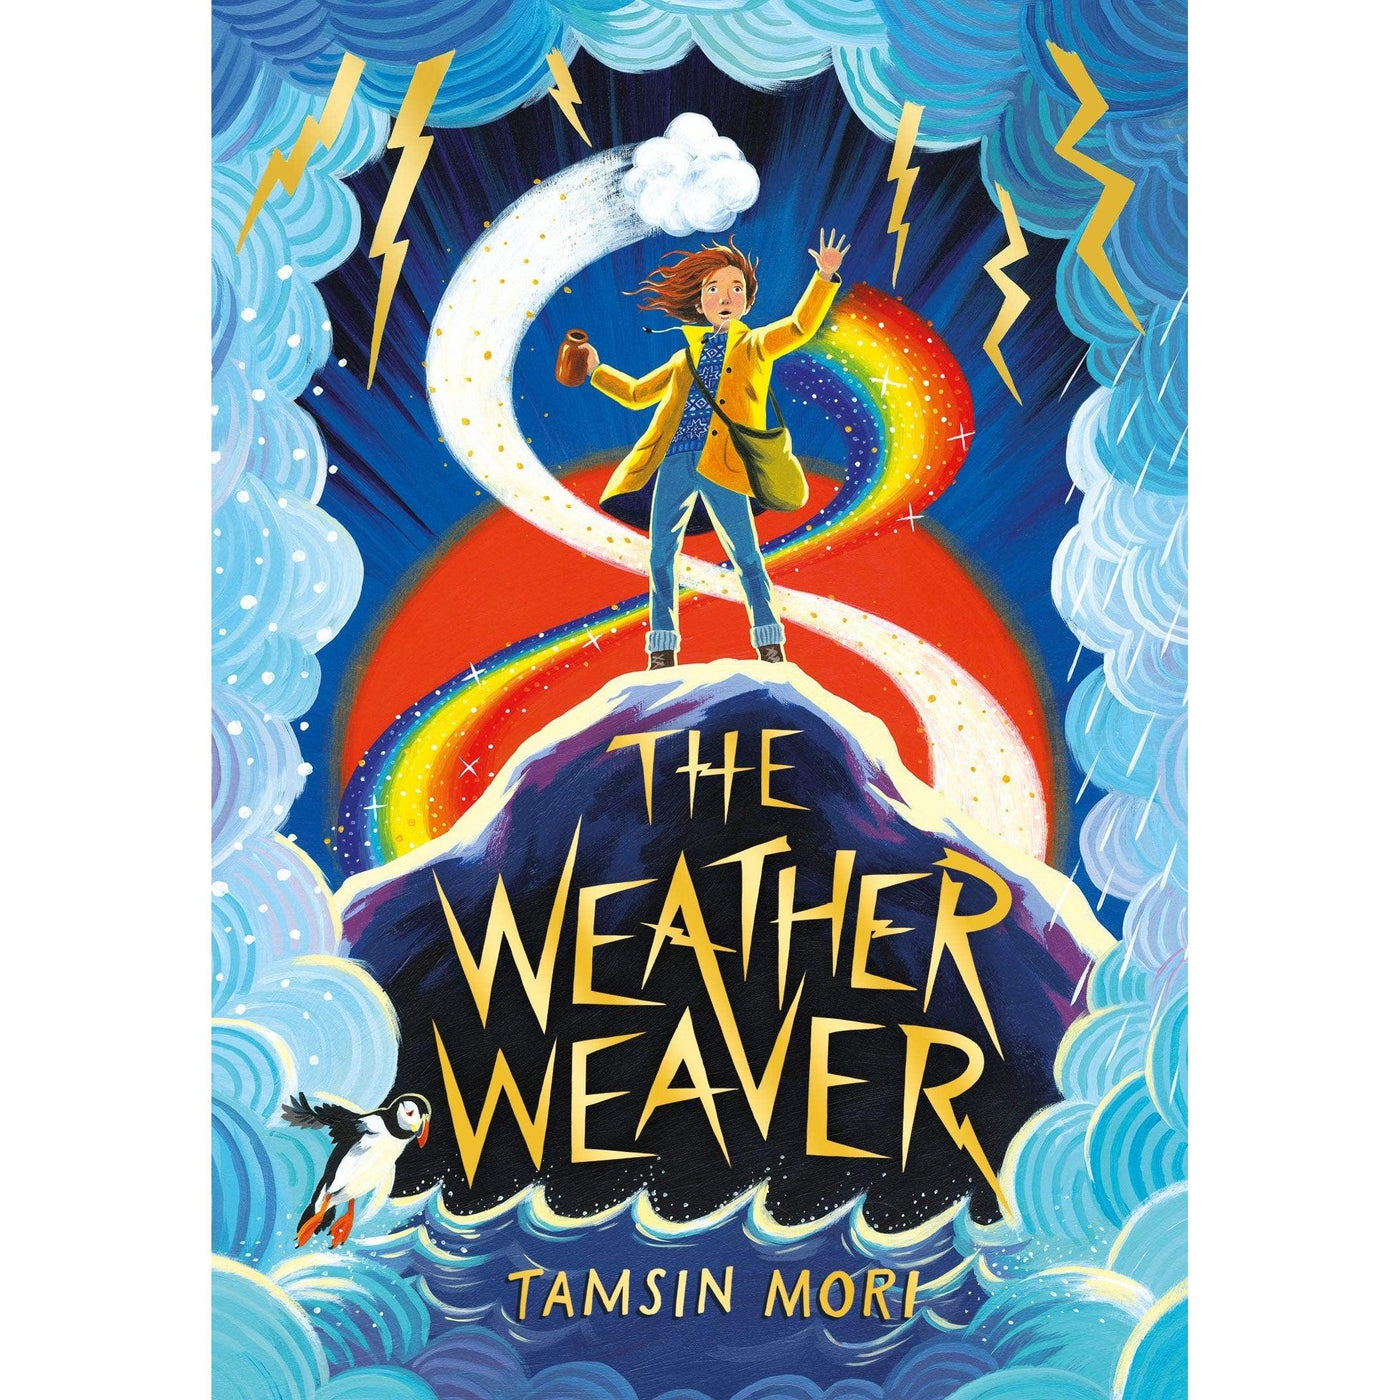 The Weather Weaver - Tamsin Mori